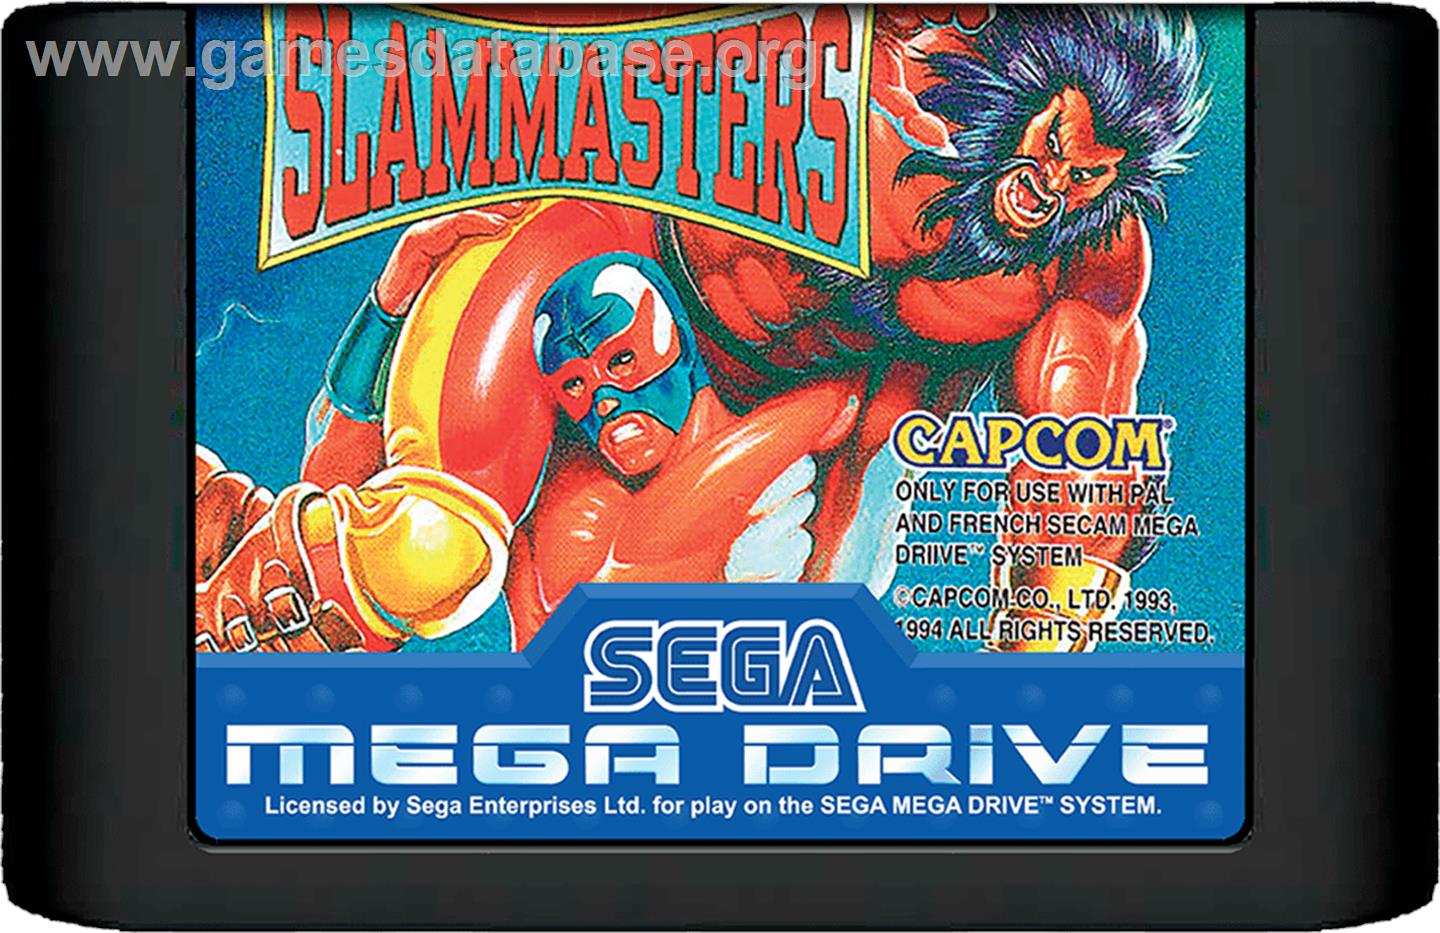 Saturday Night Slam Masters - Sega Genesis - Artwork - Cartridge